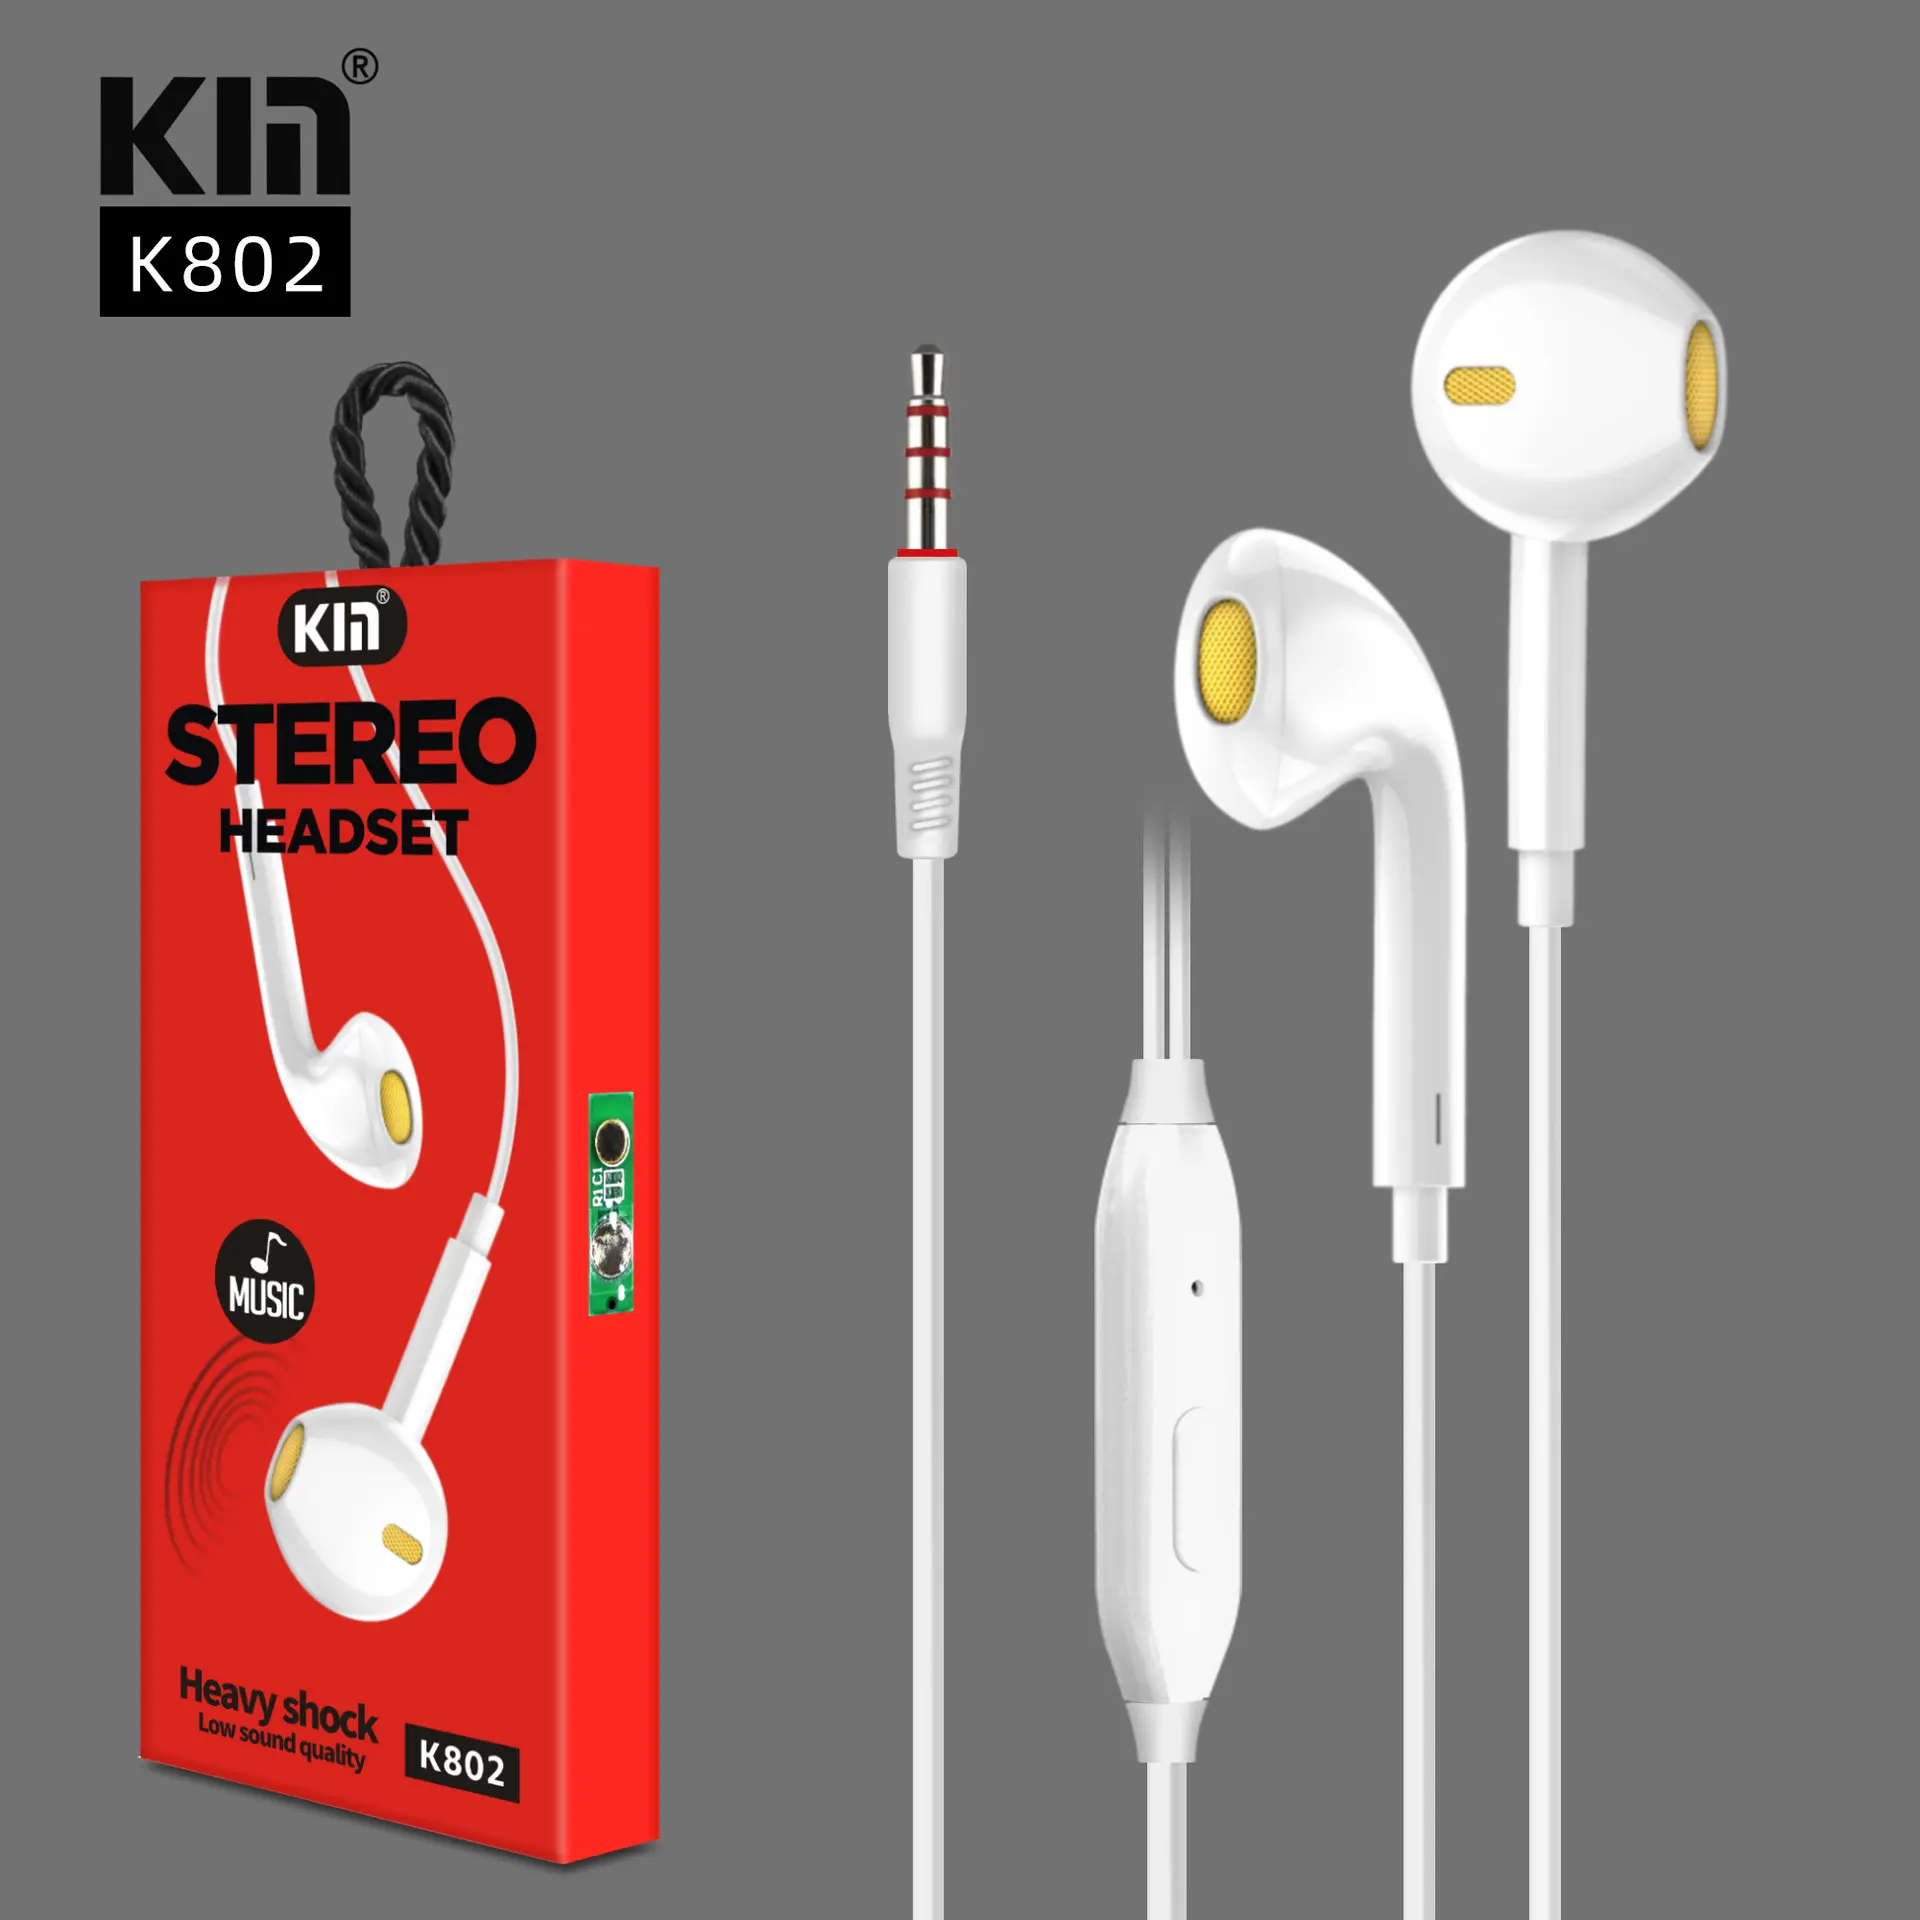 KM fábrica chinesa K802 fones de ouvido com fio 3.5 , controle de linha para ouvir música e fazer chamadas, tampões para os ouvidos do celular, capacitivo